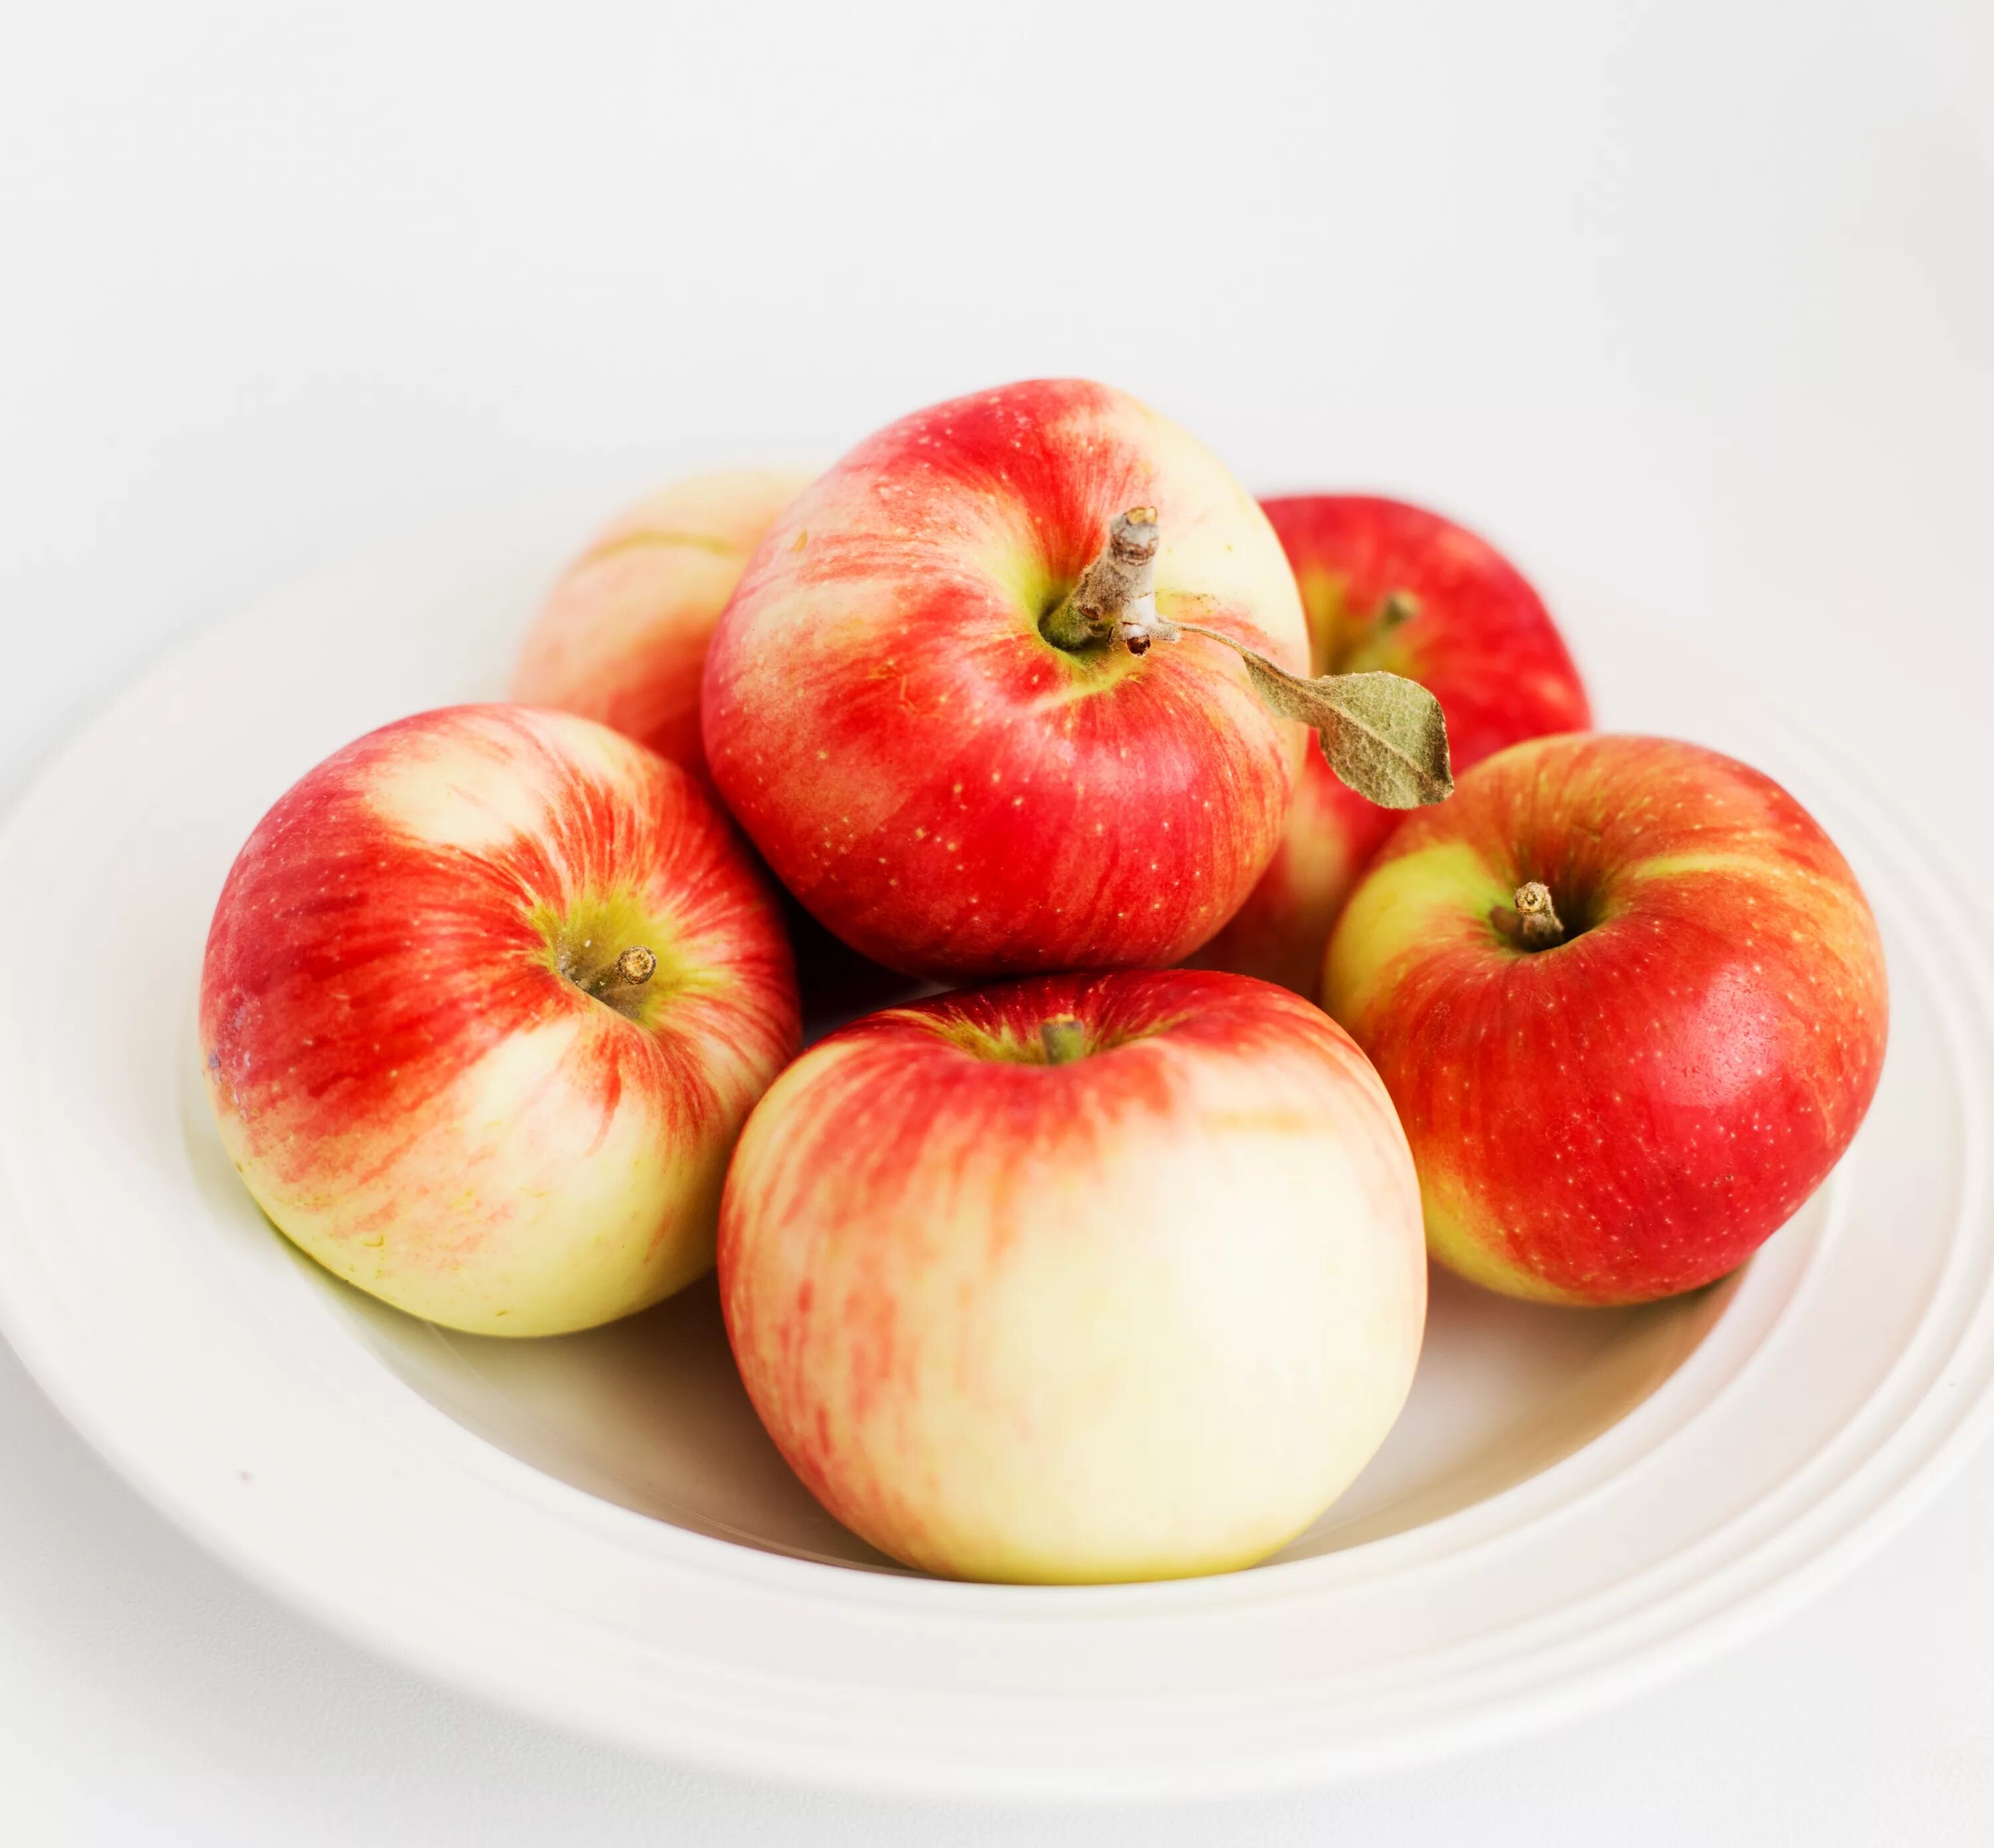 В 2 вазах по 18 яблок. Яблоко на тарелке. Яблоко на белом фоне. Яблоки красные.